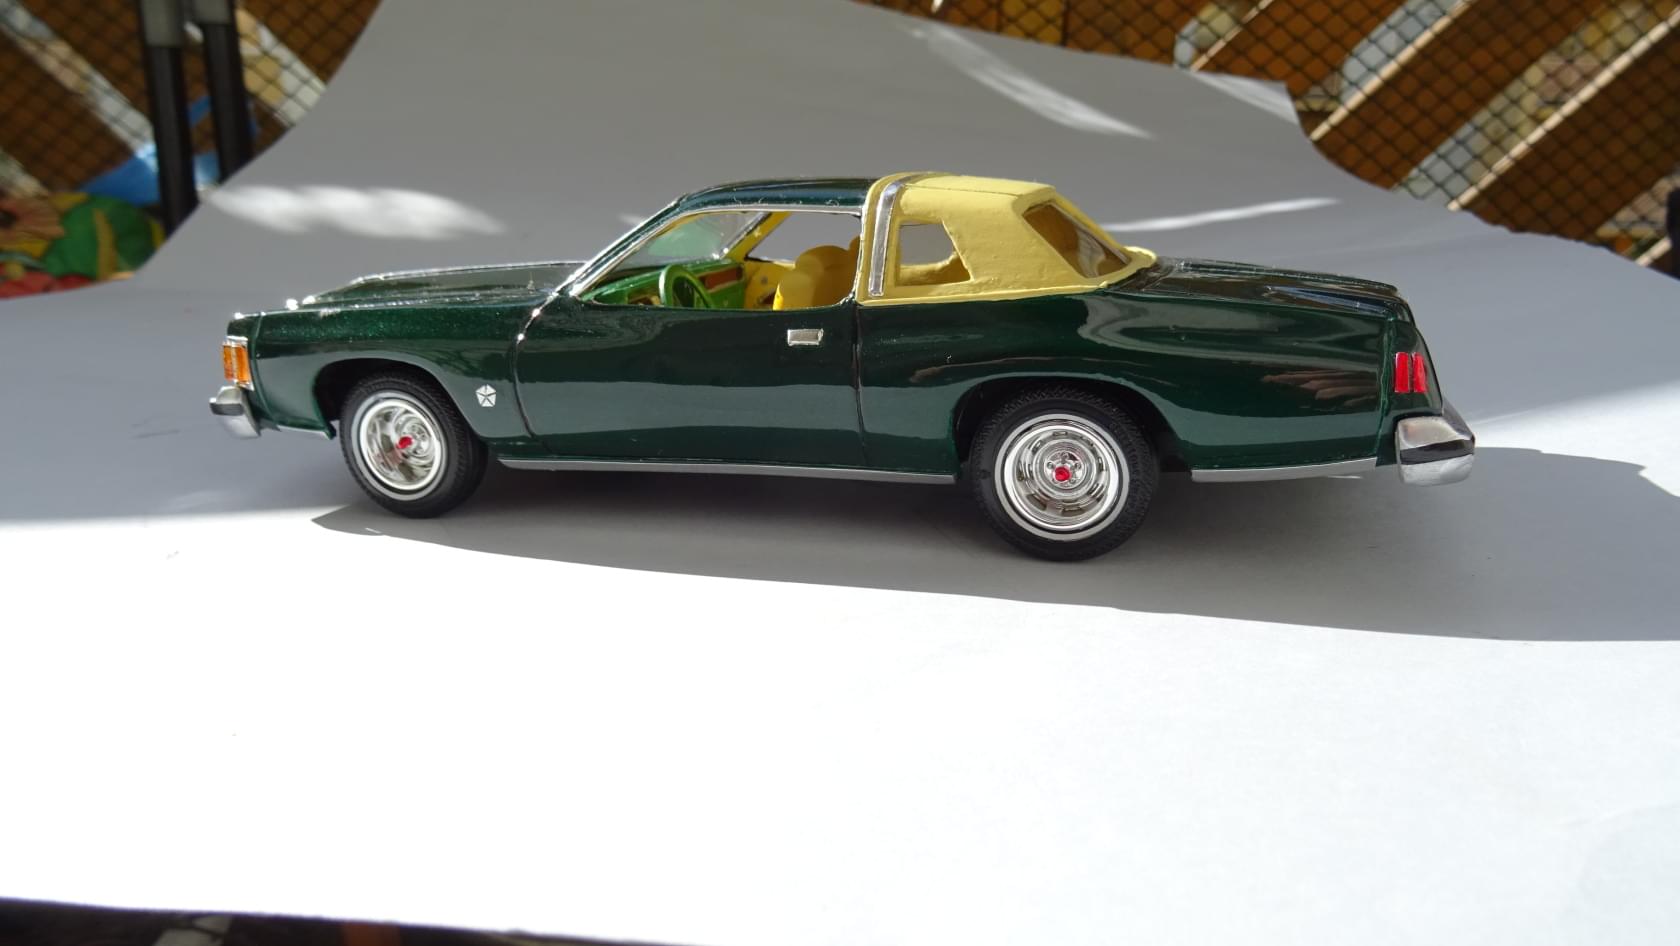 78 Chrysler Cordoba - Model Cars - Model Cars Magazine Forum